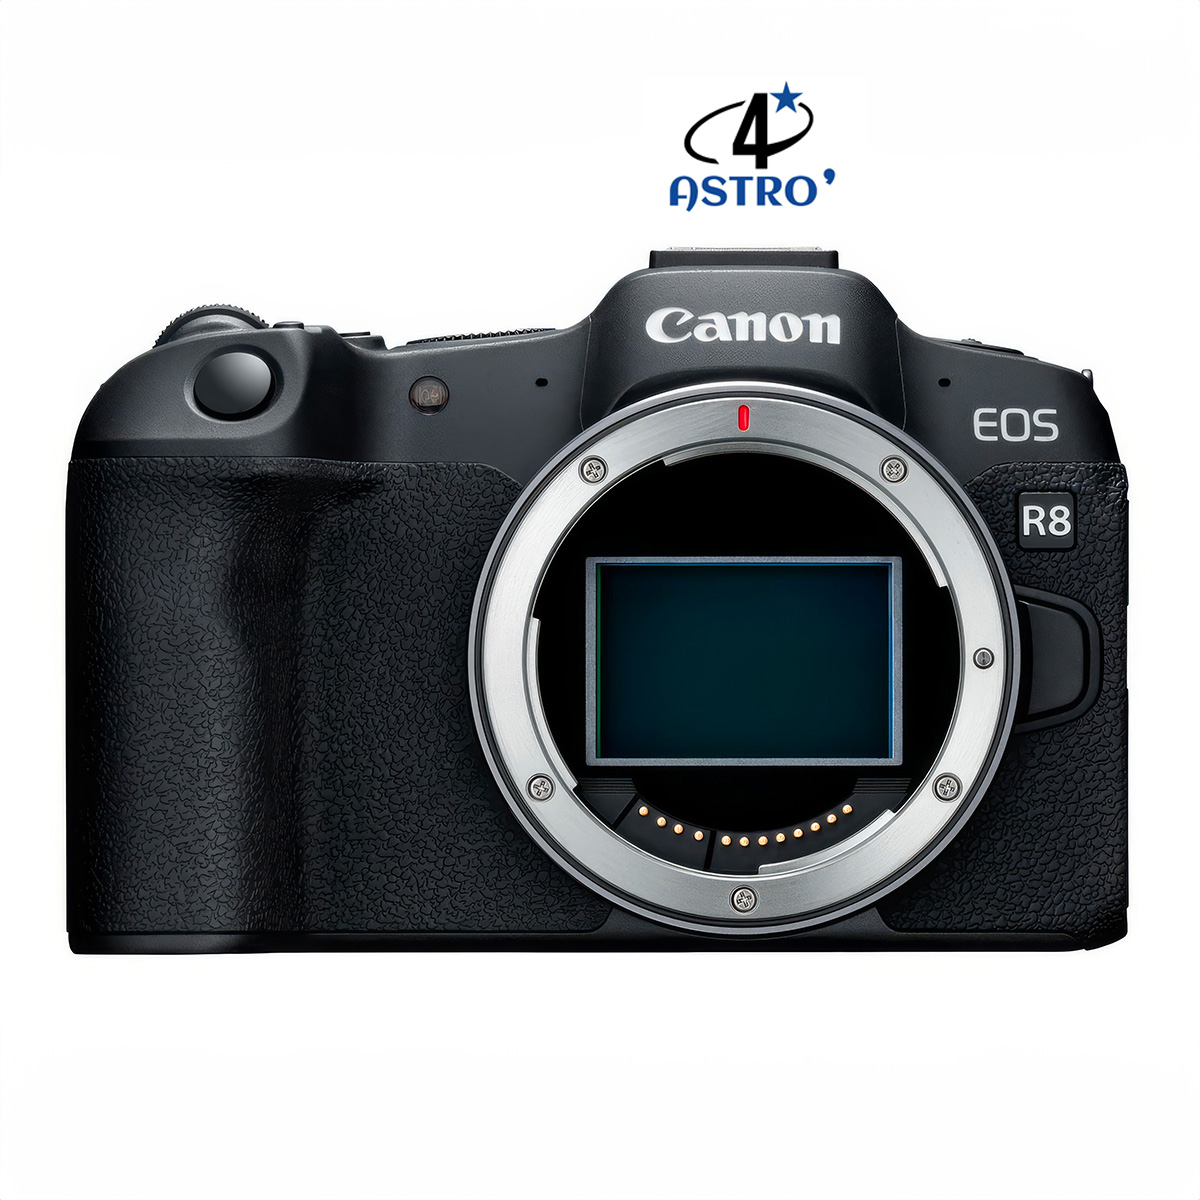 Hybride Canon EOS R8 neuf défiltré + refiltré 4'Astro 4'Astro modding